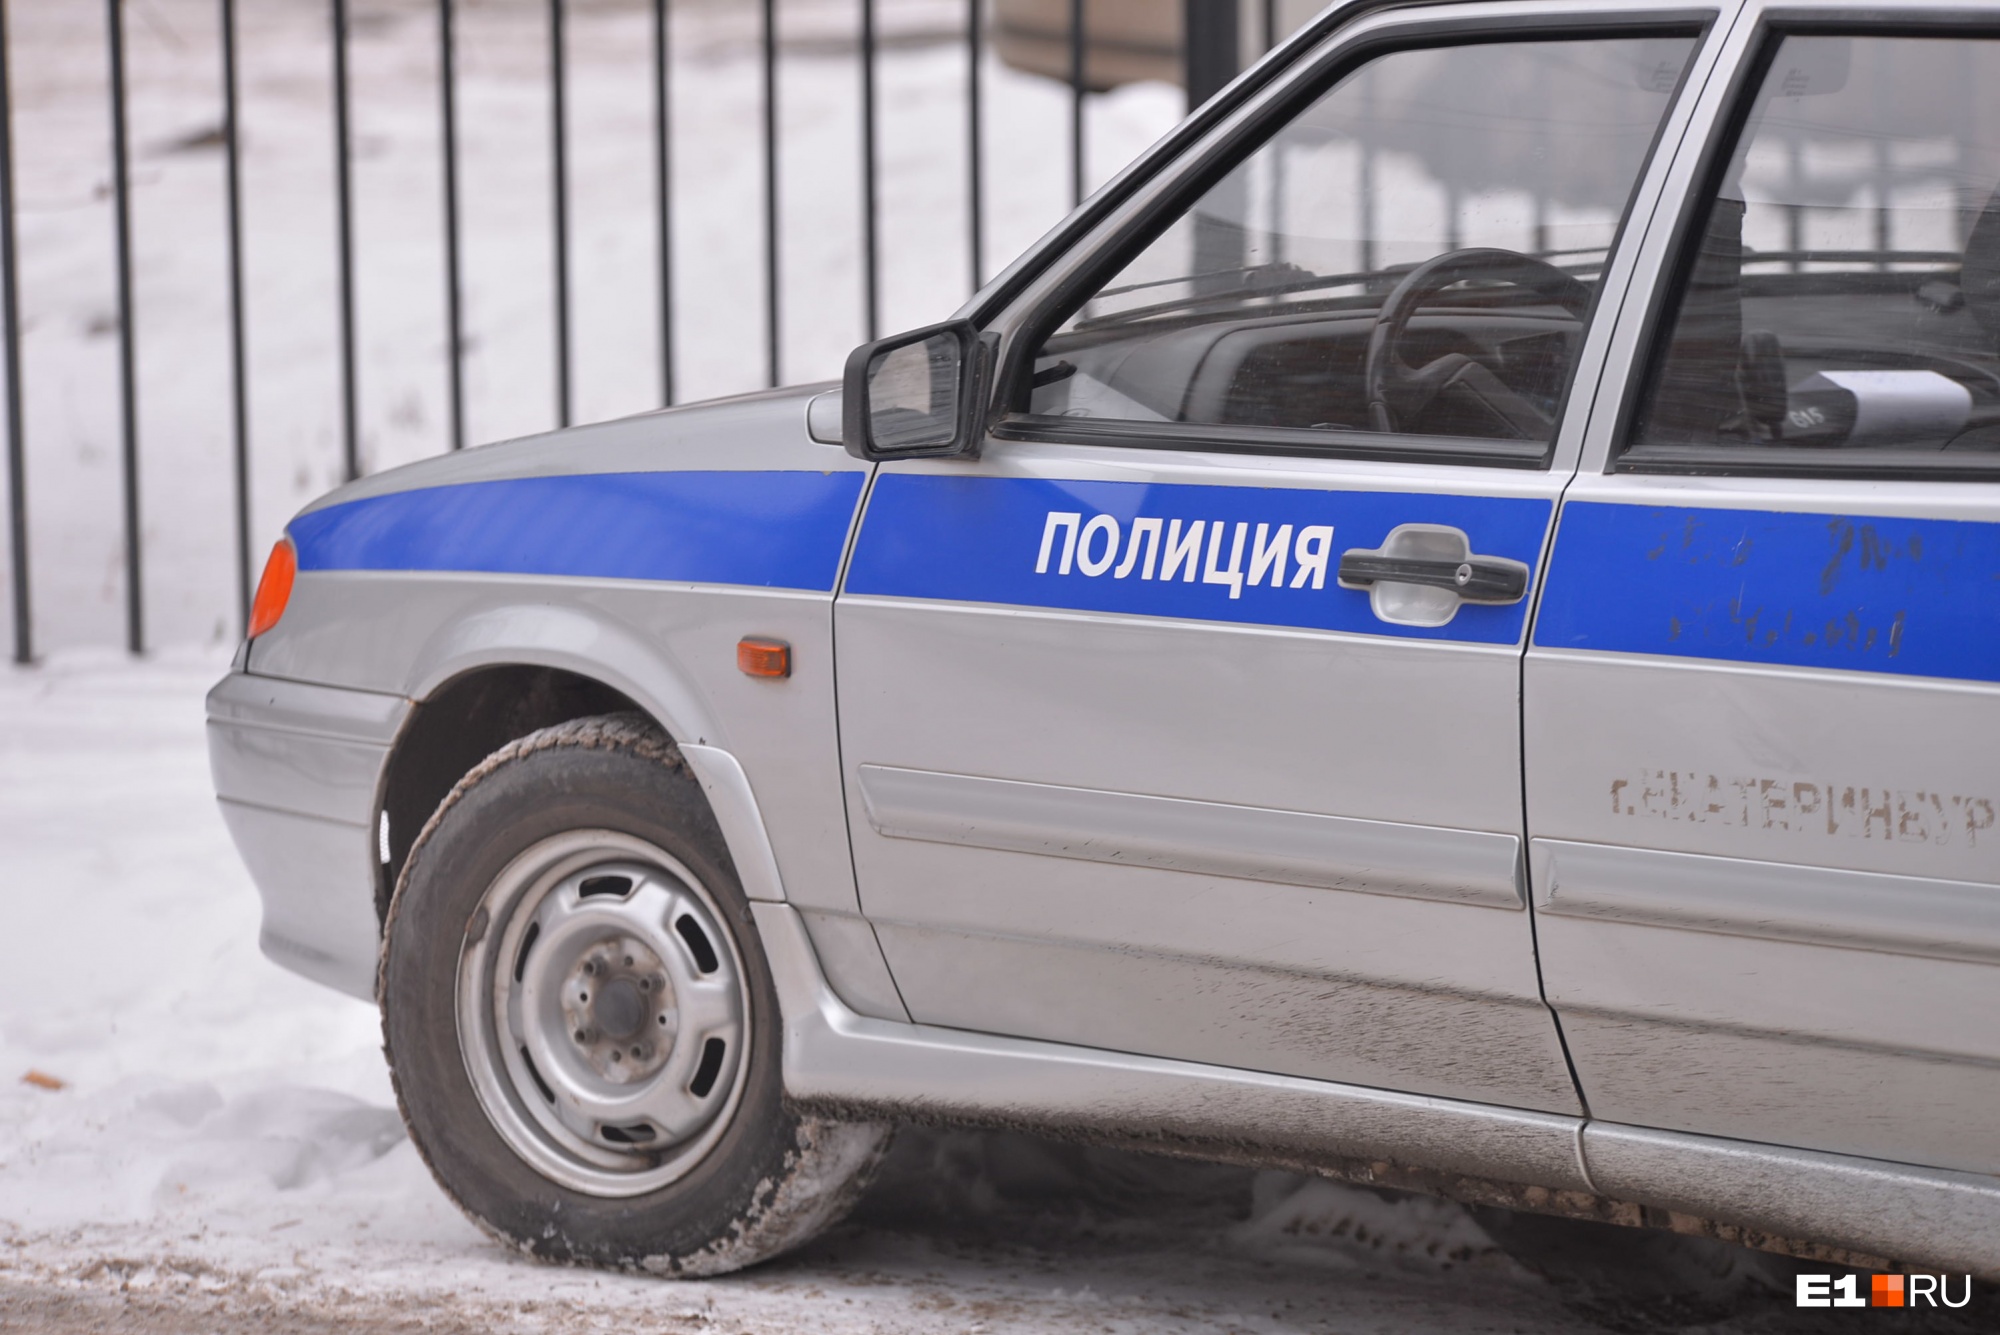 «Заставляли рыть могилу»: на Урале для полицейских, пытавших детей, попросили реальные сроки